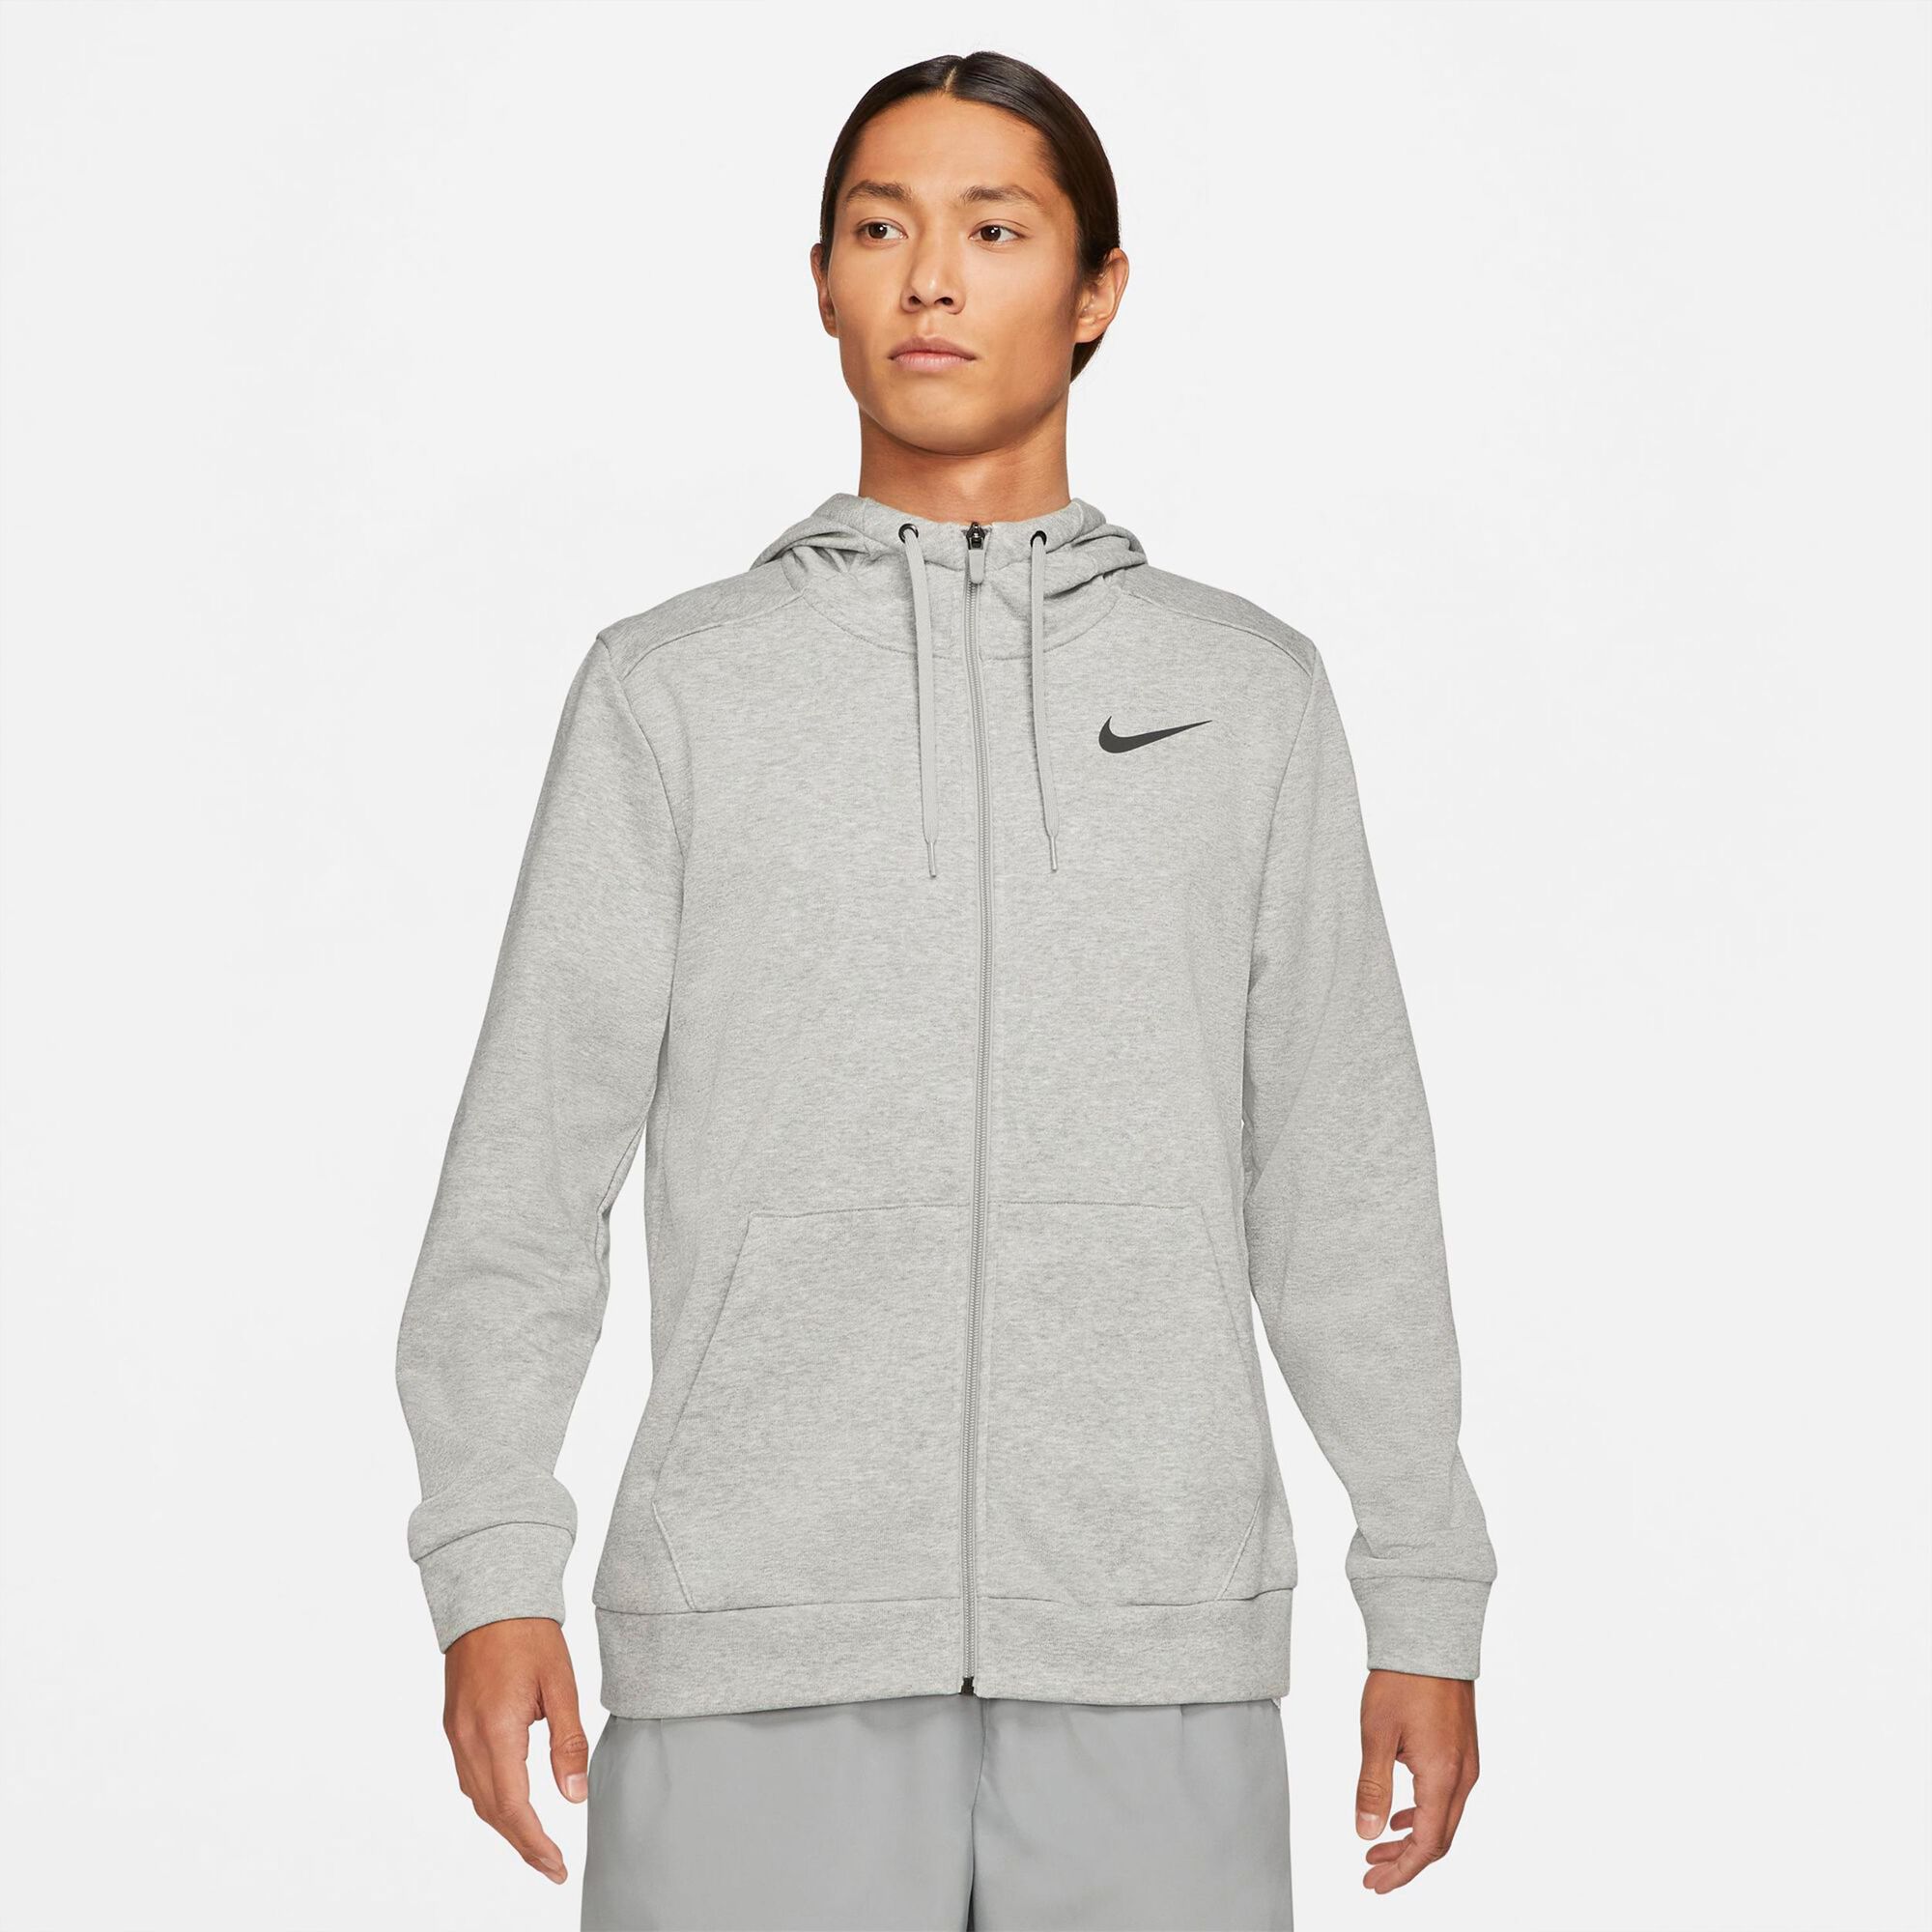 buy Nike Dri-Fit Zip Hoodie Men - Grey, Black online | Tennis-Point